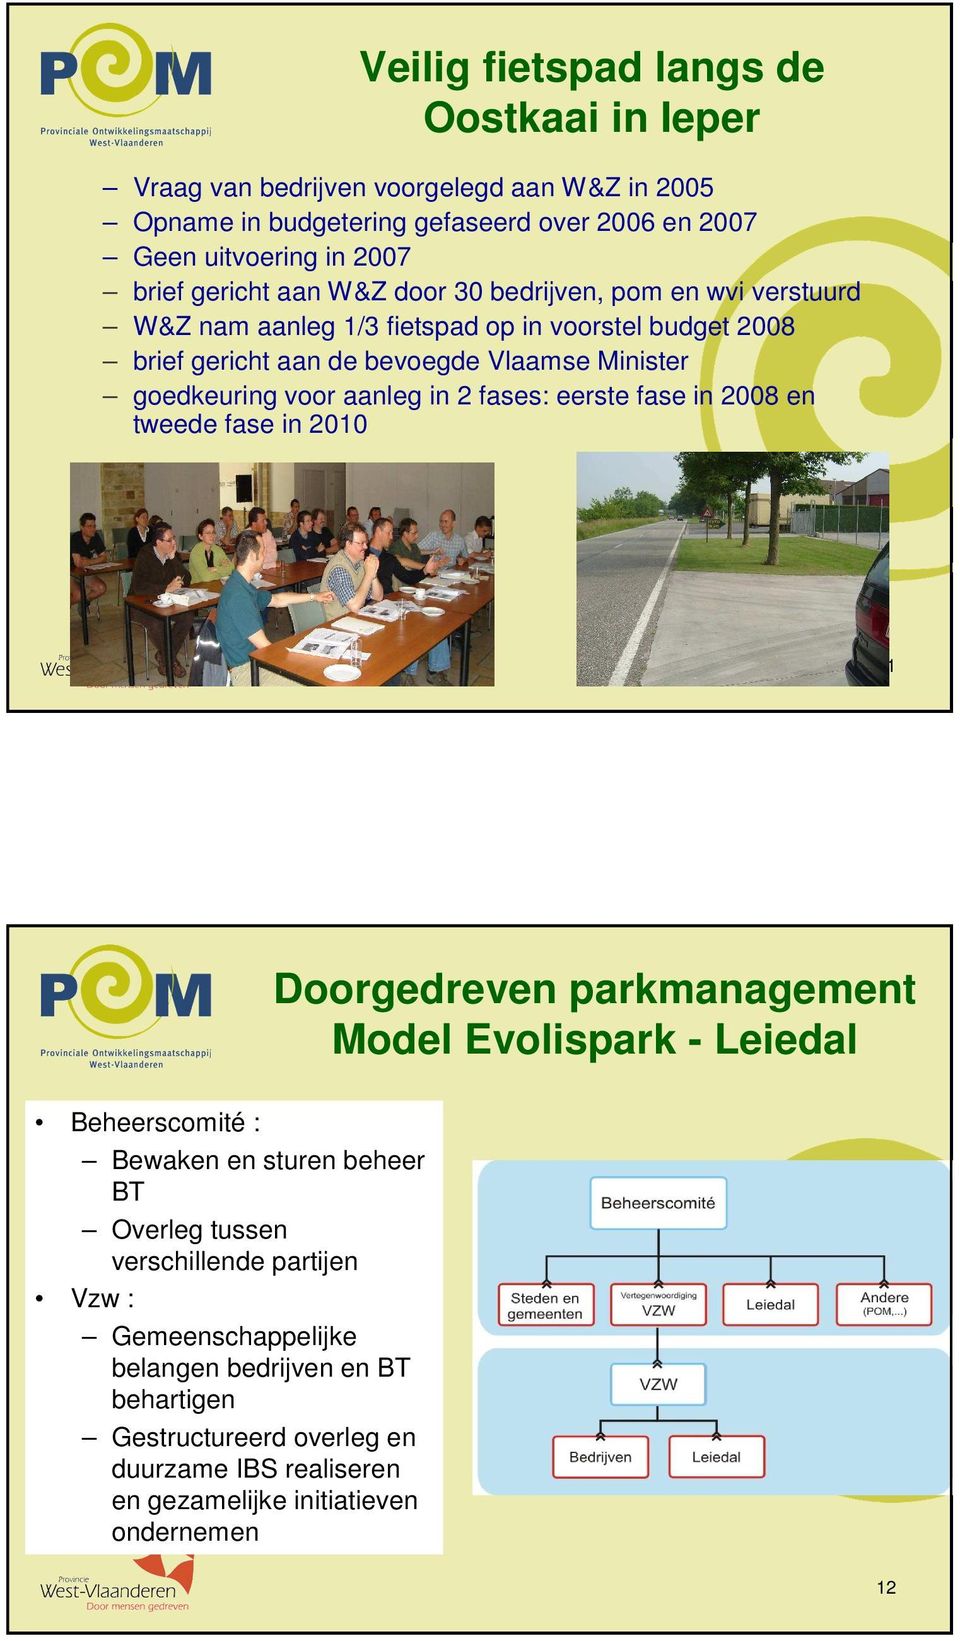 aanleg in 2 fases: eerste fase in 2008 en tweede fase in 2010 11 Doorgedreven parkmanagement Model Evolispark - Leiedal Beheerscomité : Bewaken en sturen beheer BT Overleg